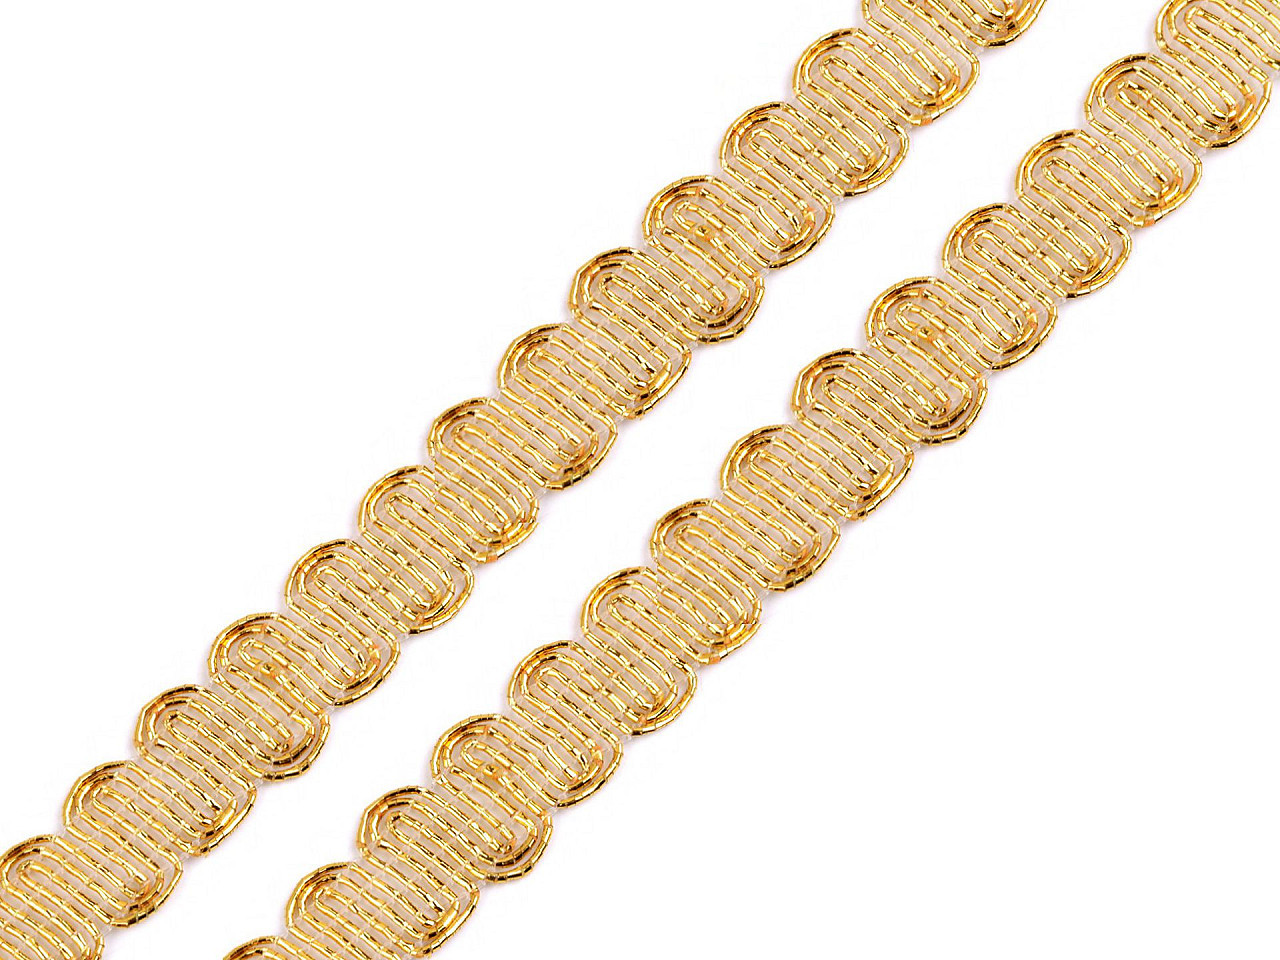 Leonský prýmek šíře 14 mm, barva zlatá